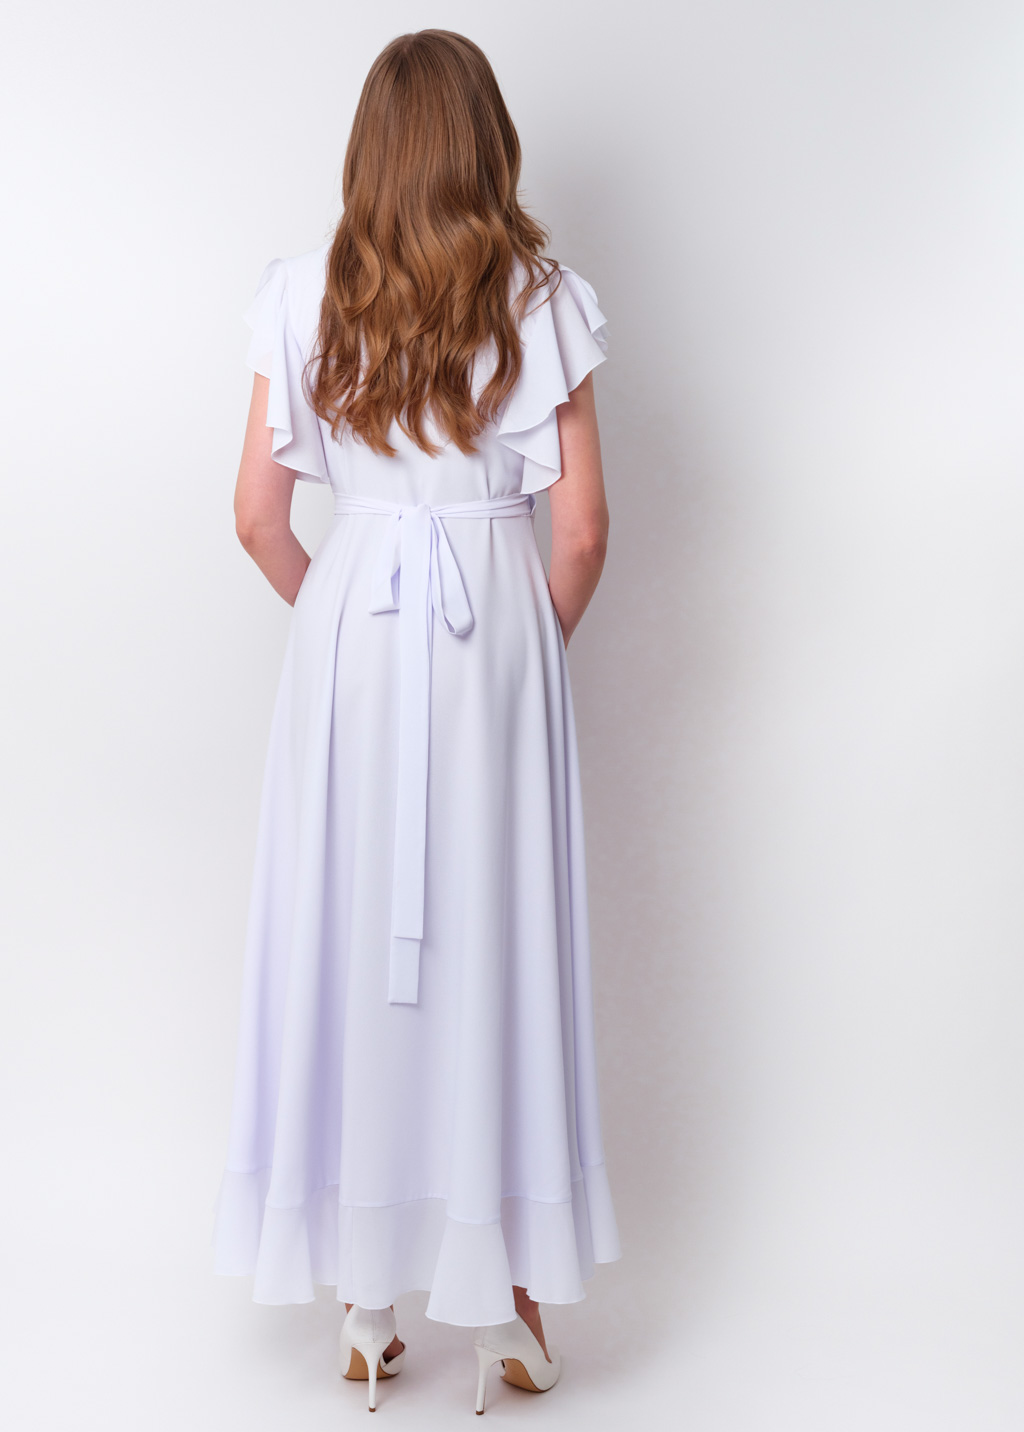 White chiffon wrap dress